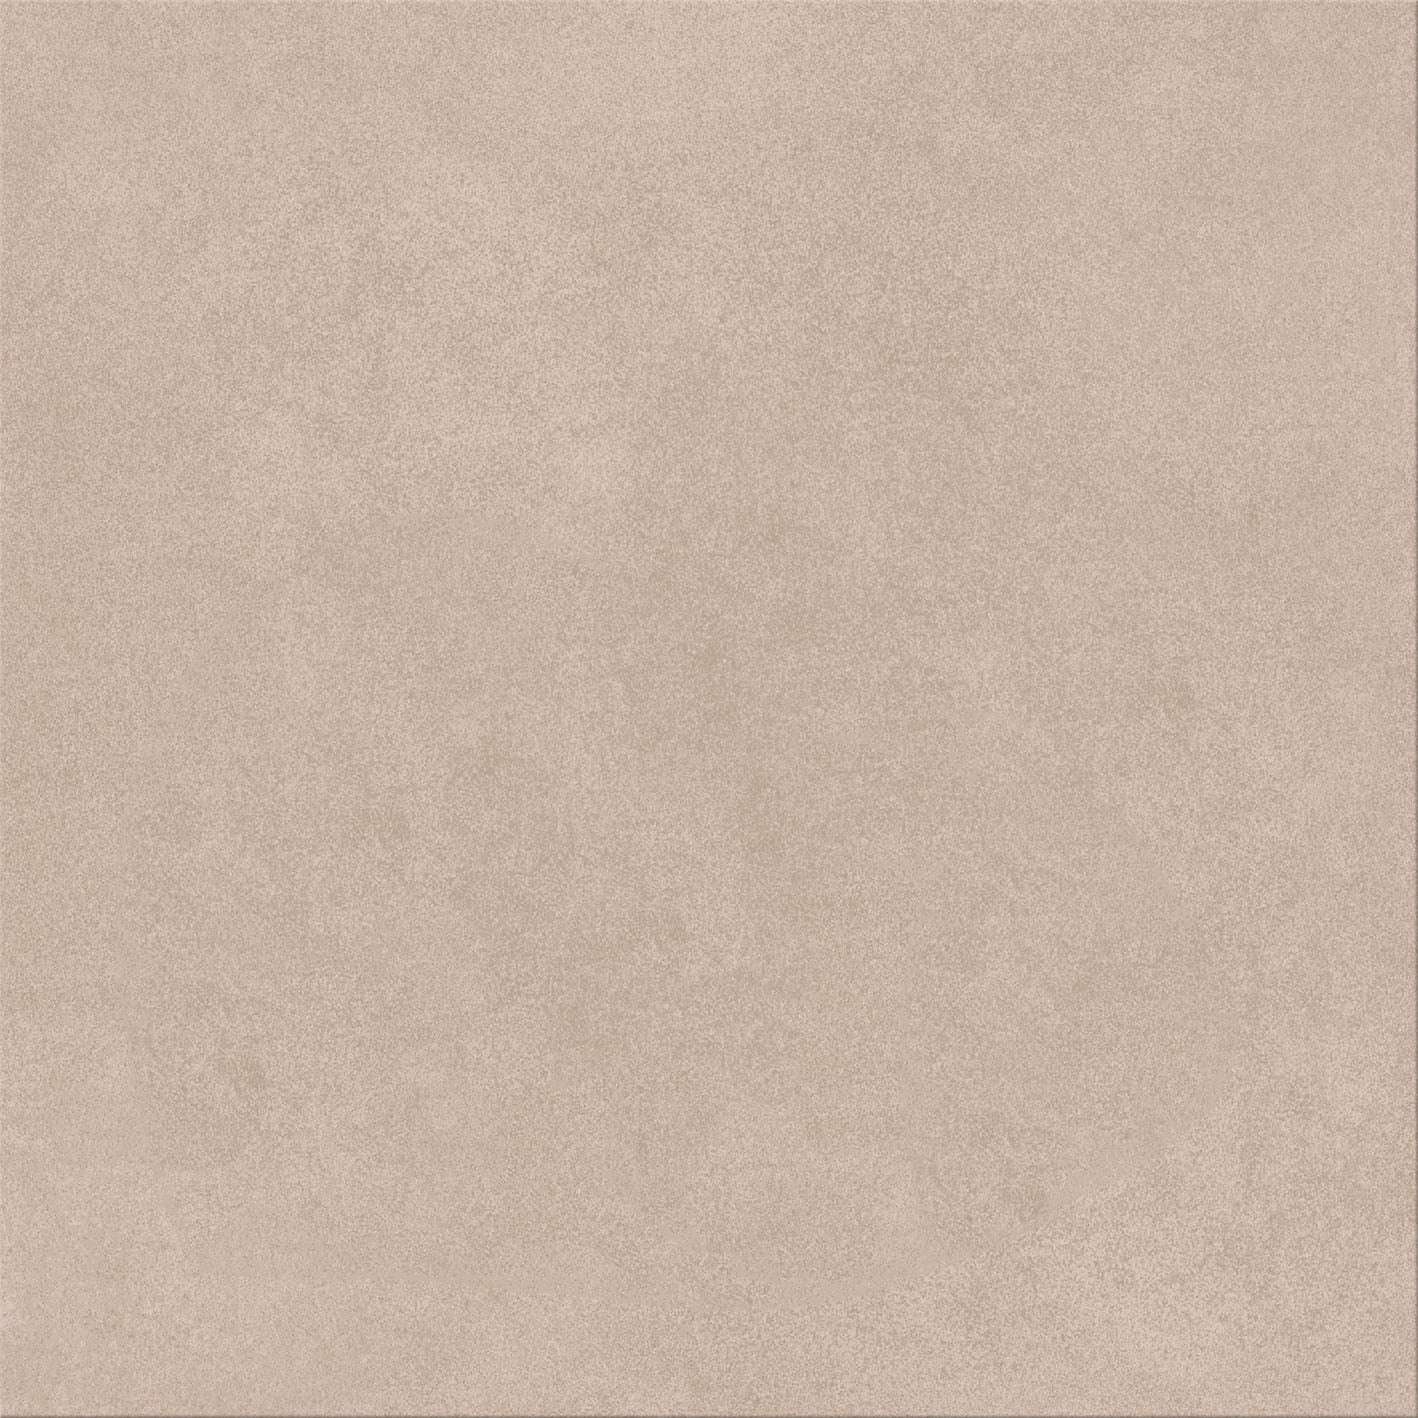 Керамогранит Cinca Bel Air Cappucino 8568, цвет коричневый, поверхность глазурованная, квадрат, 500x500